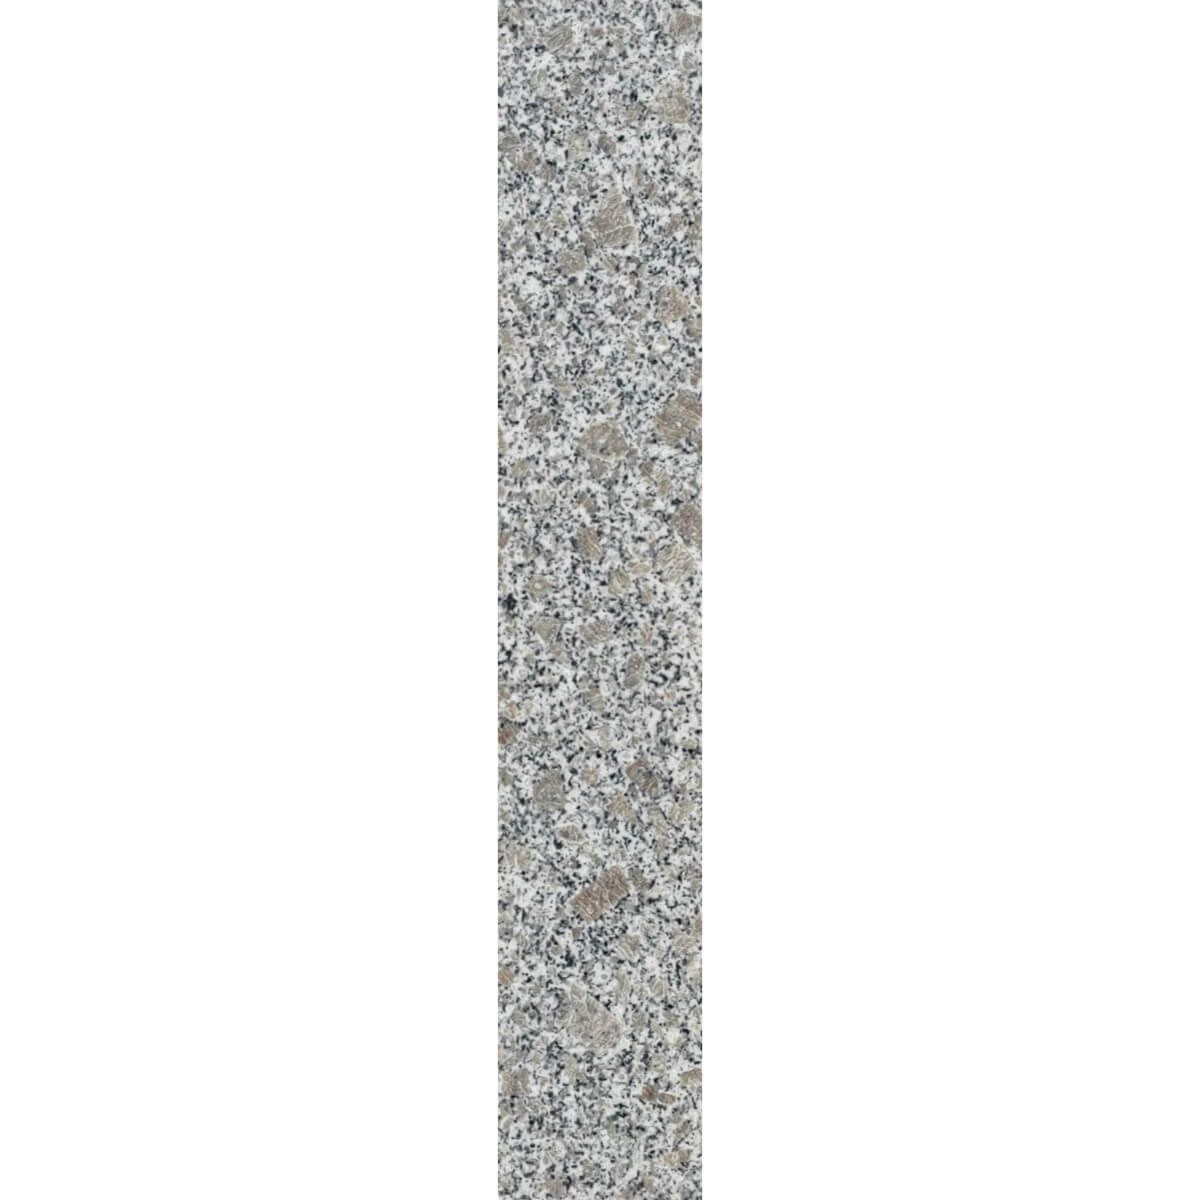 Podstopień granitowy Fustone polerowany 150x16,5x2 cm